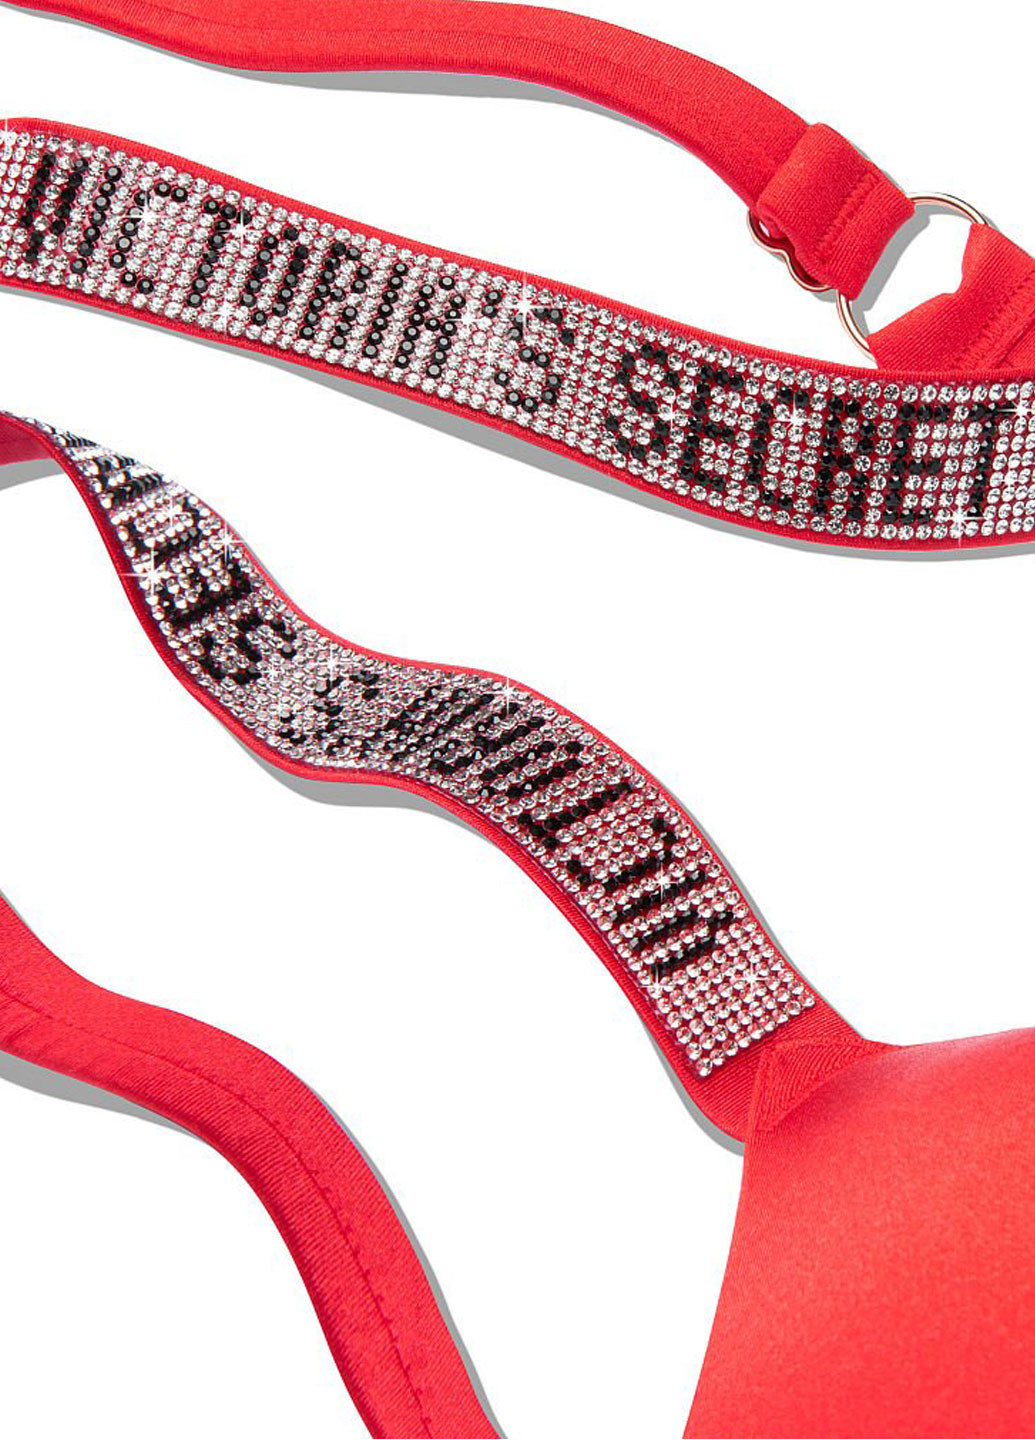 Червоний літній купальник (ліф, трусики) роздільний Victoria's Secret